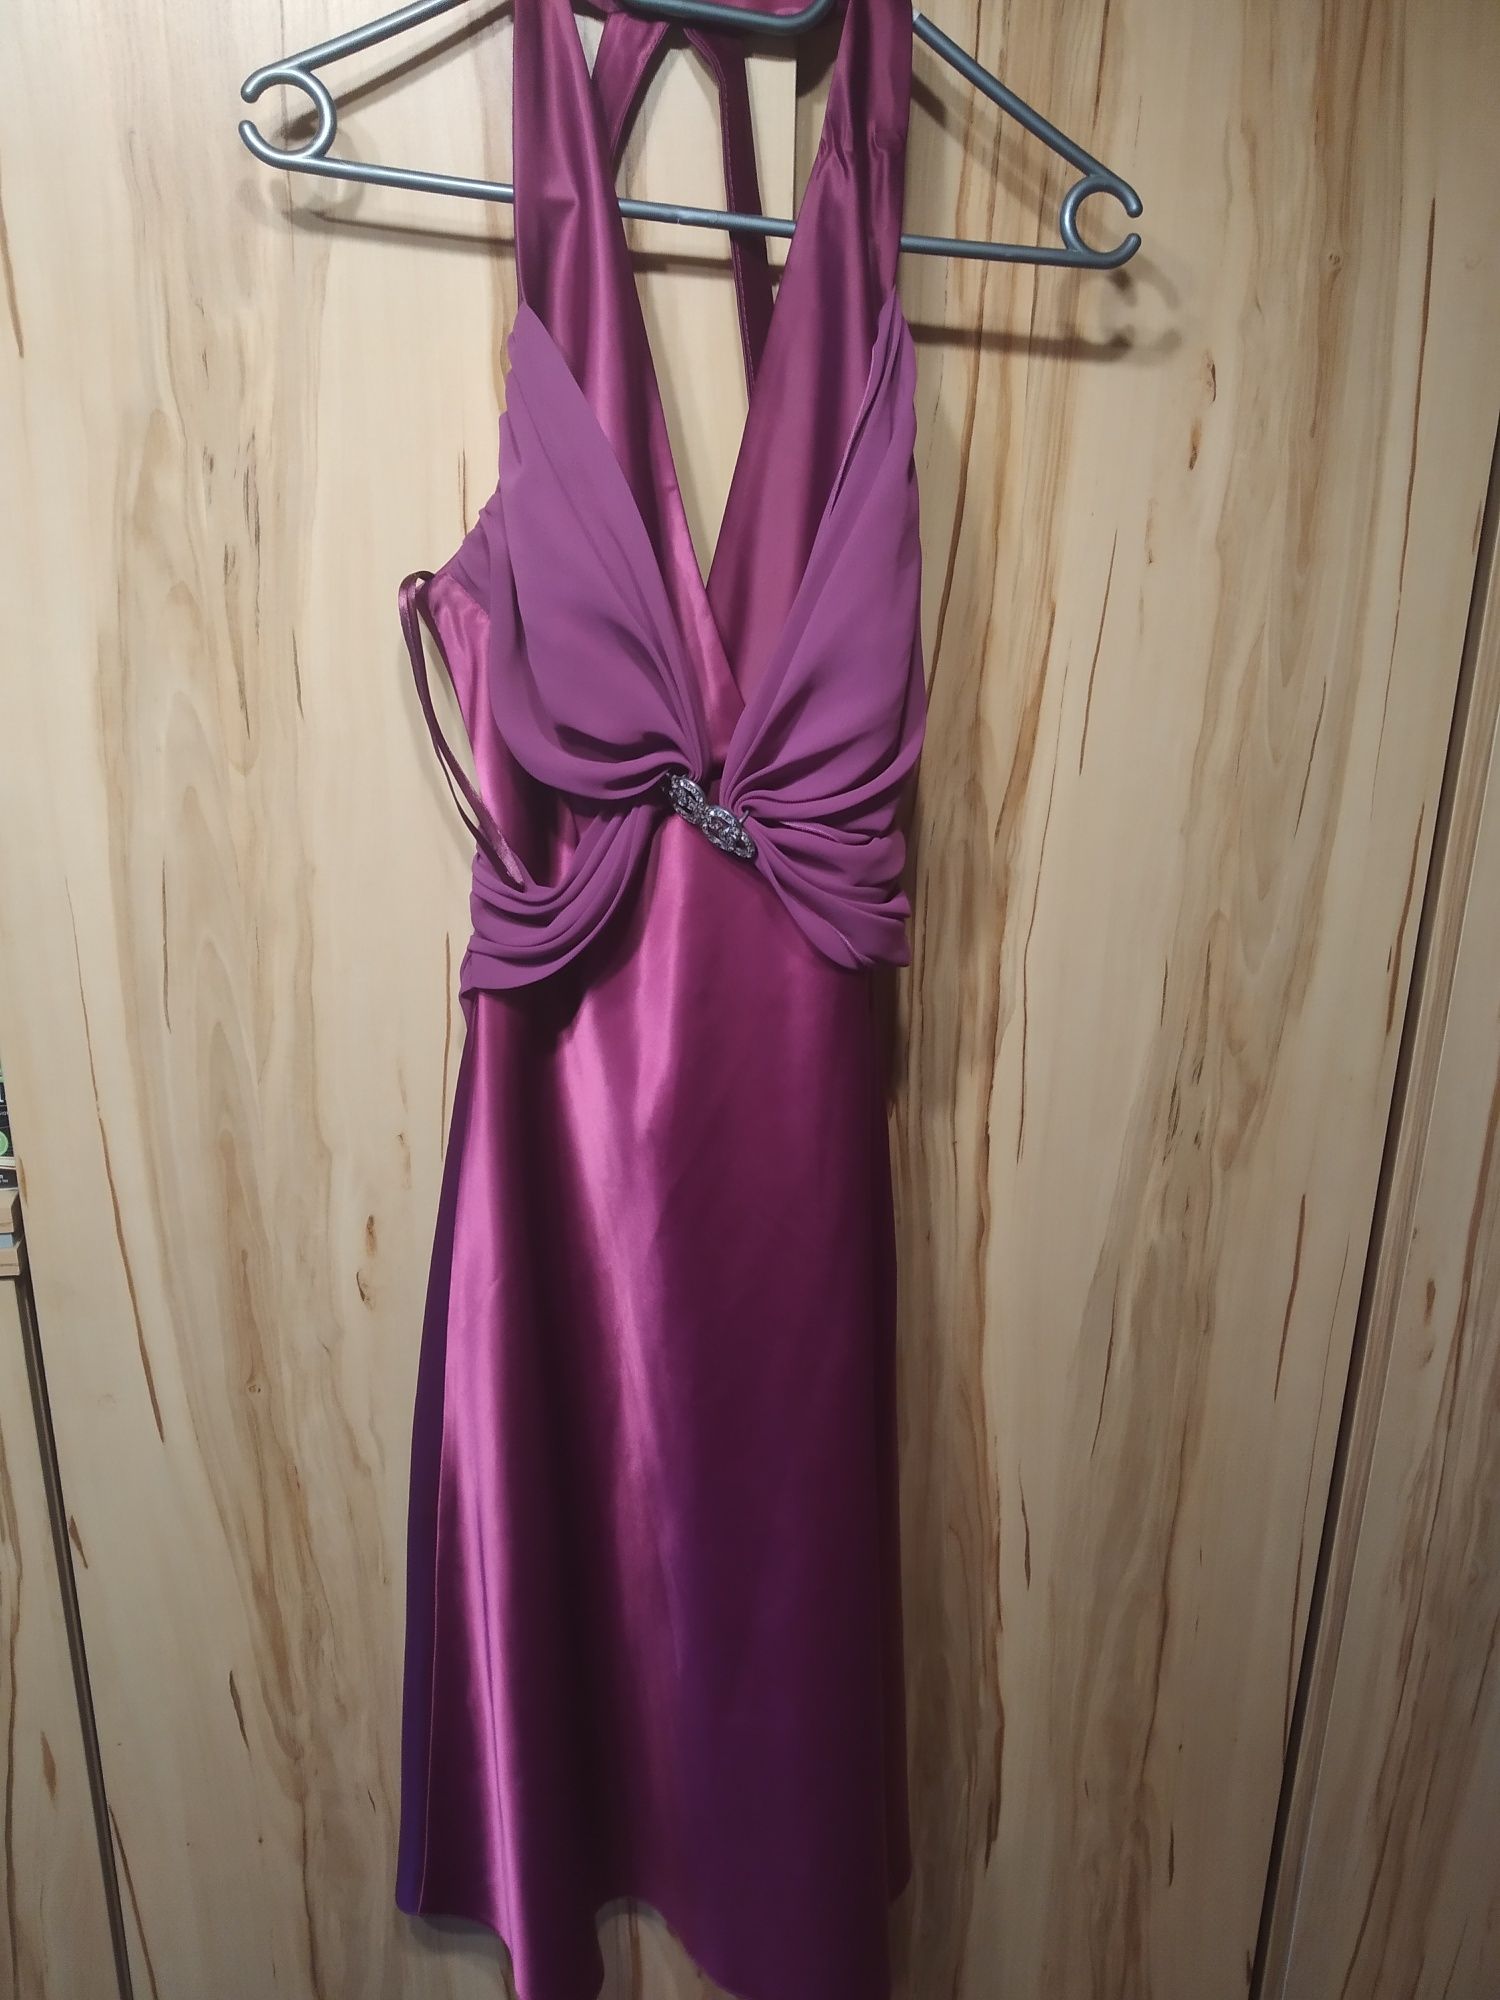 Sukienka fioletowa satynowa r. 40 studniówka/bal/wesele